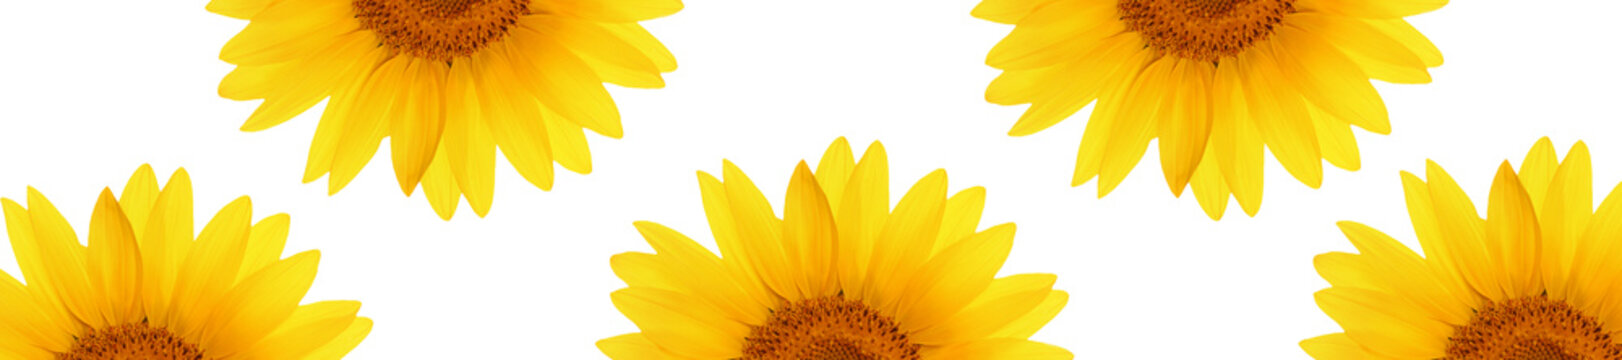 Fototapeta header web  panorama sunflower flower full length